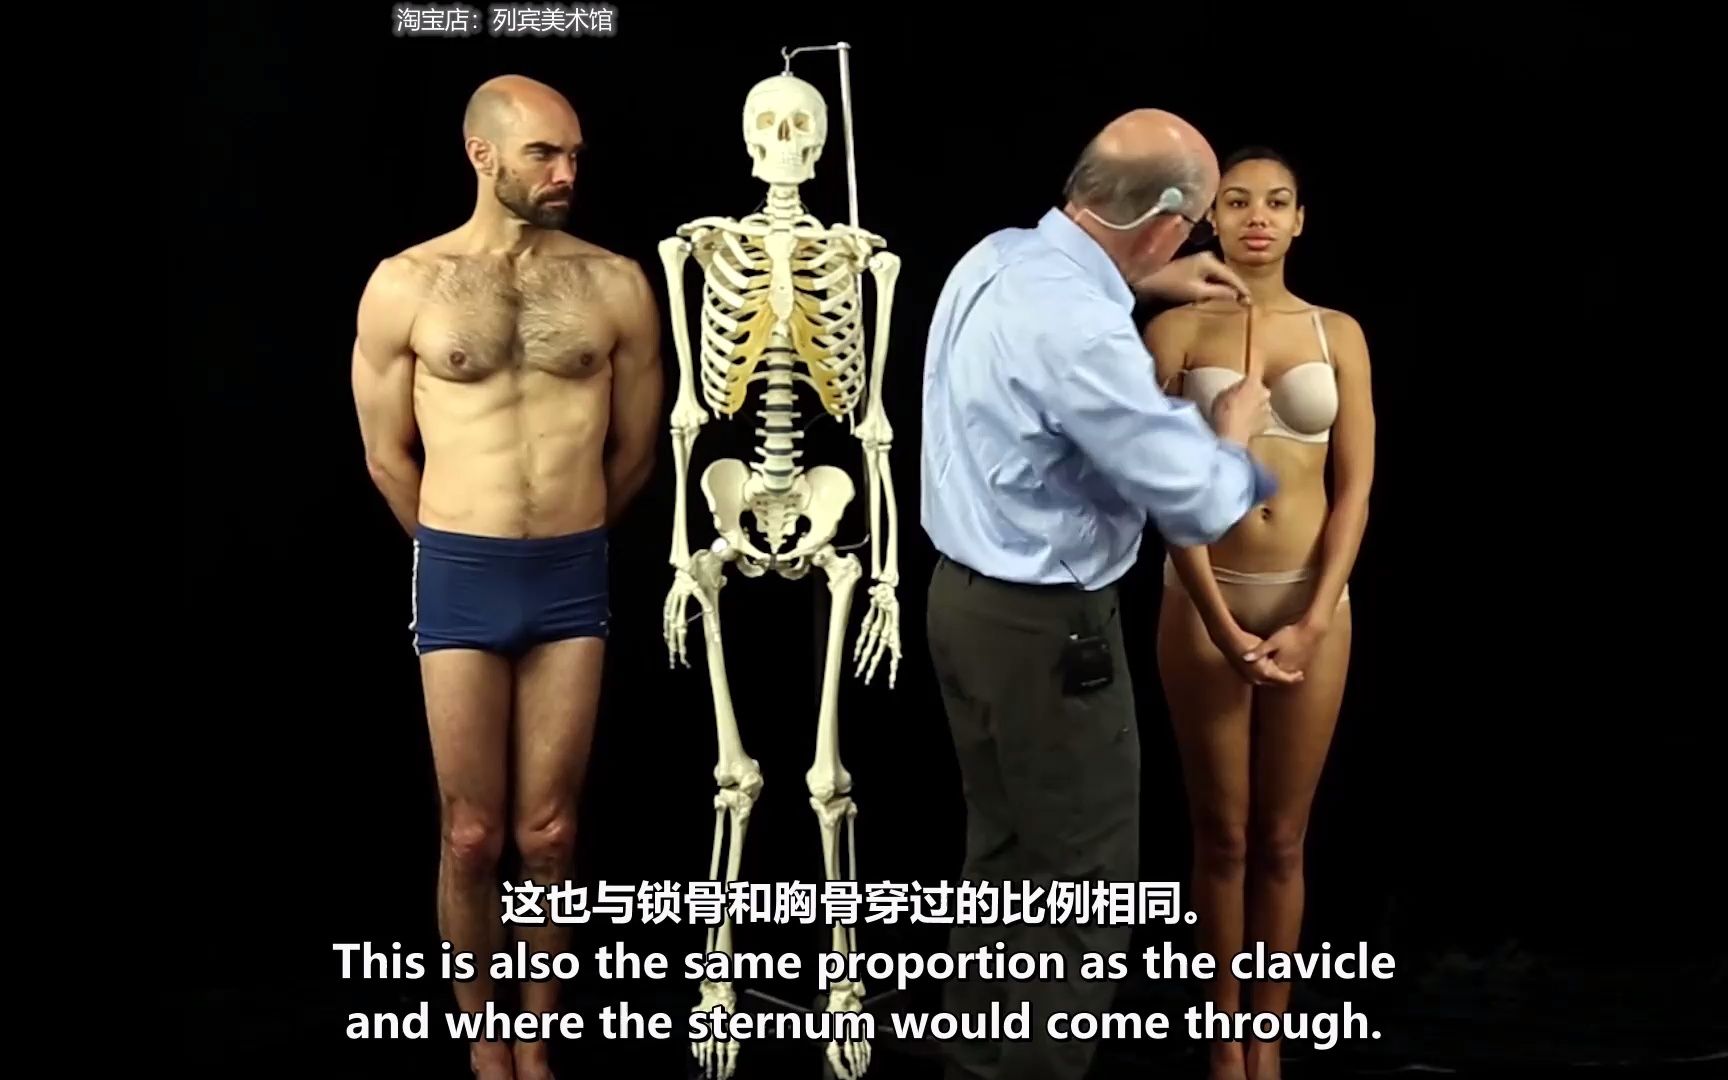 glenn vilppu 人体比例02 付费内容人体解剖、人体绘画基础、人物素描、人体速写